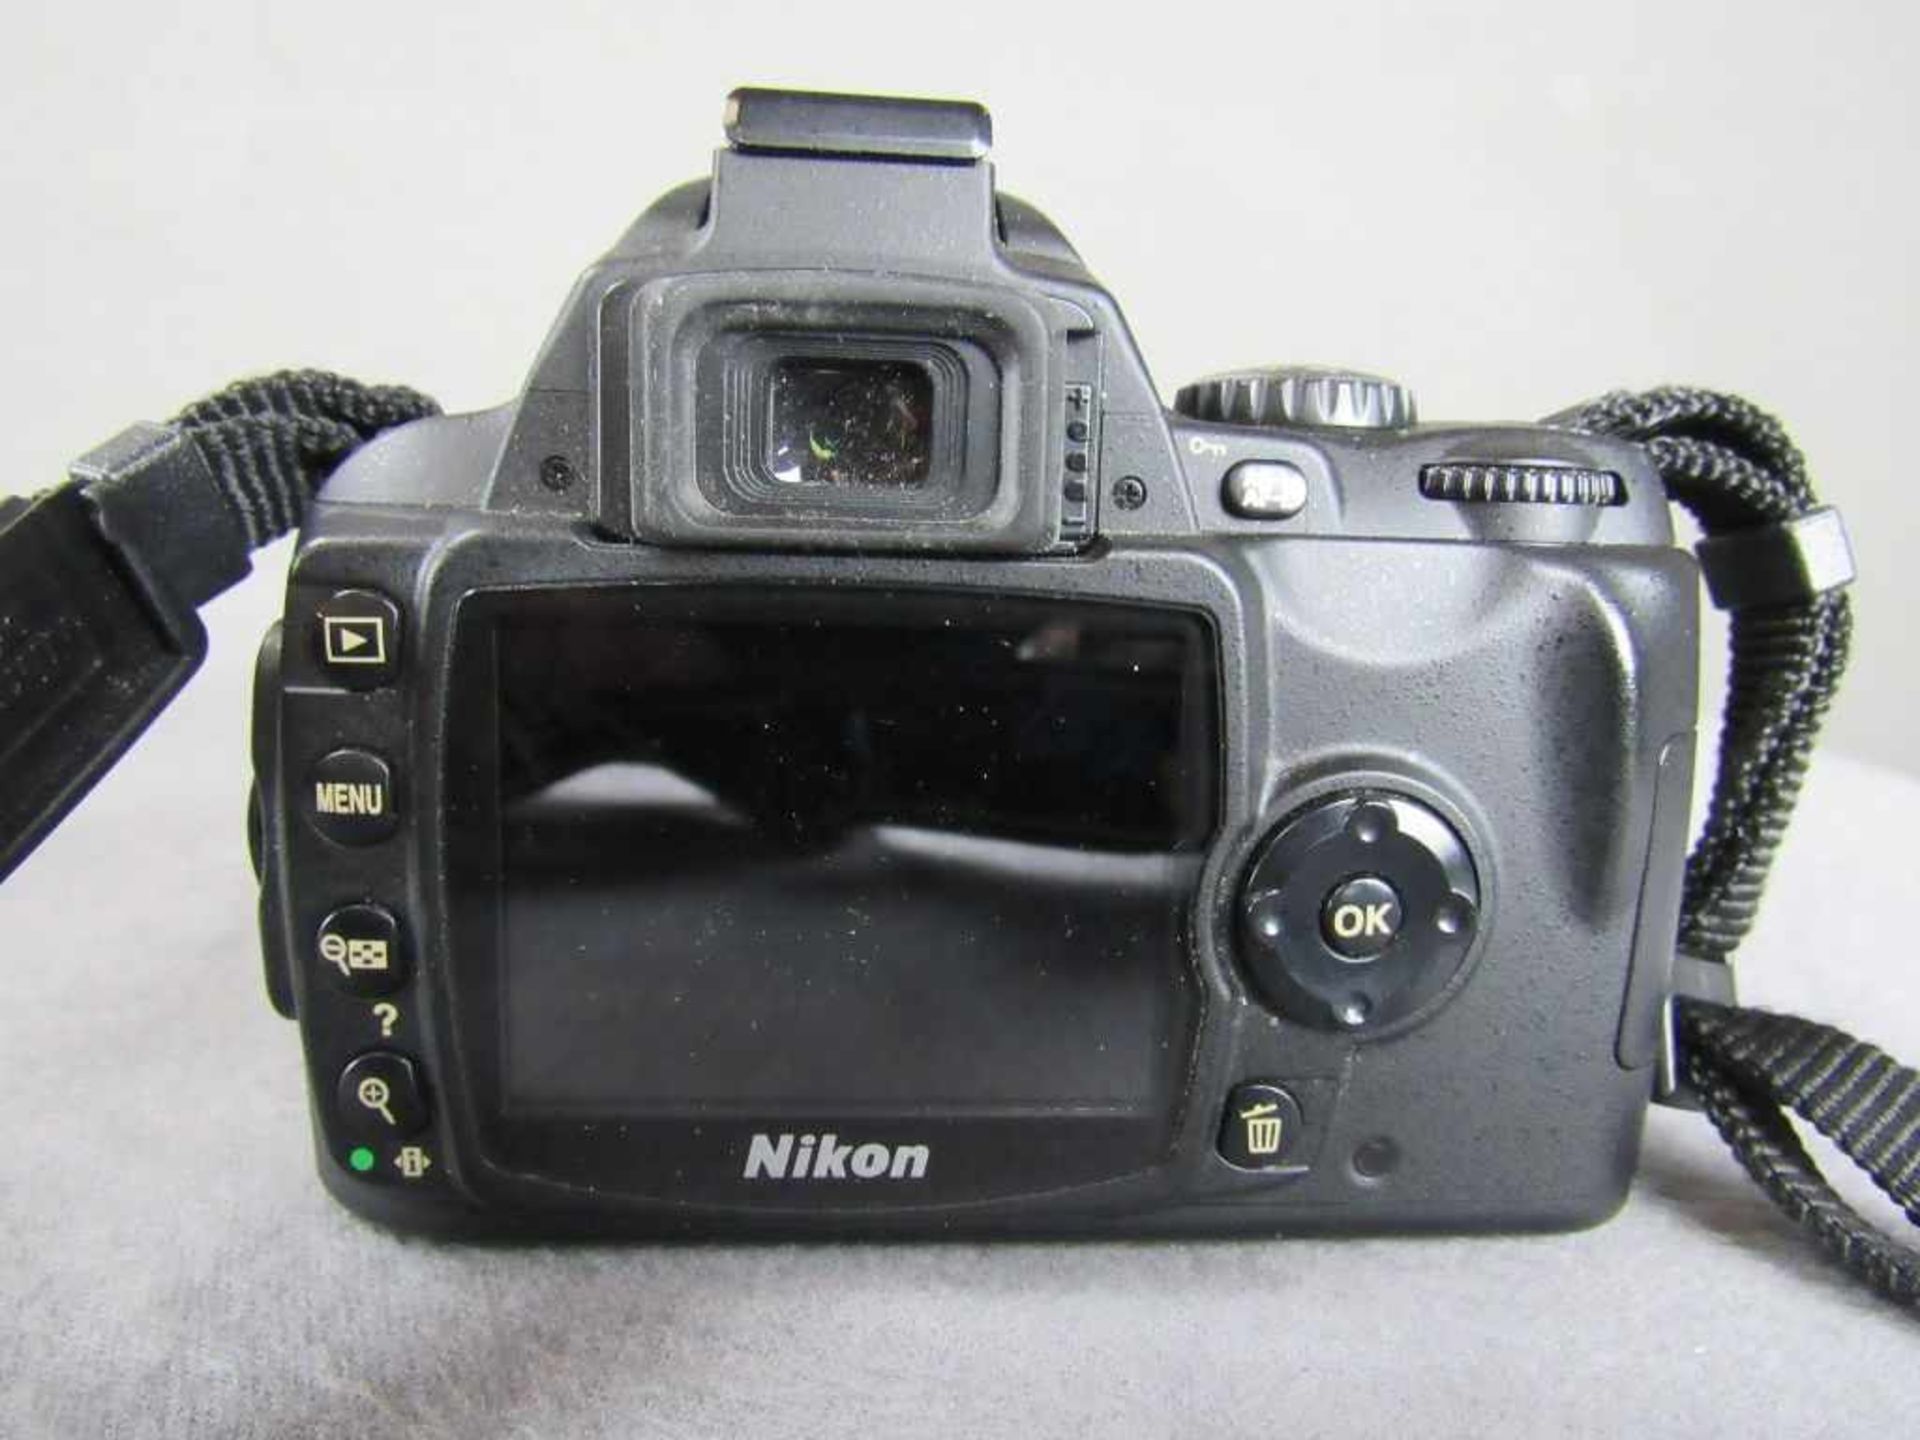 Spiegelreflexkamera Nikon Digital D40 voll funktionstüchtig mit Objektiv Tasche und Ladestation< - Bild 3 aus 4